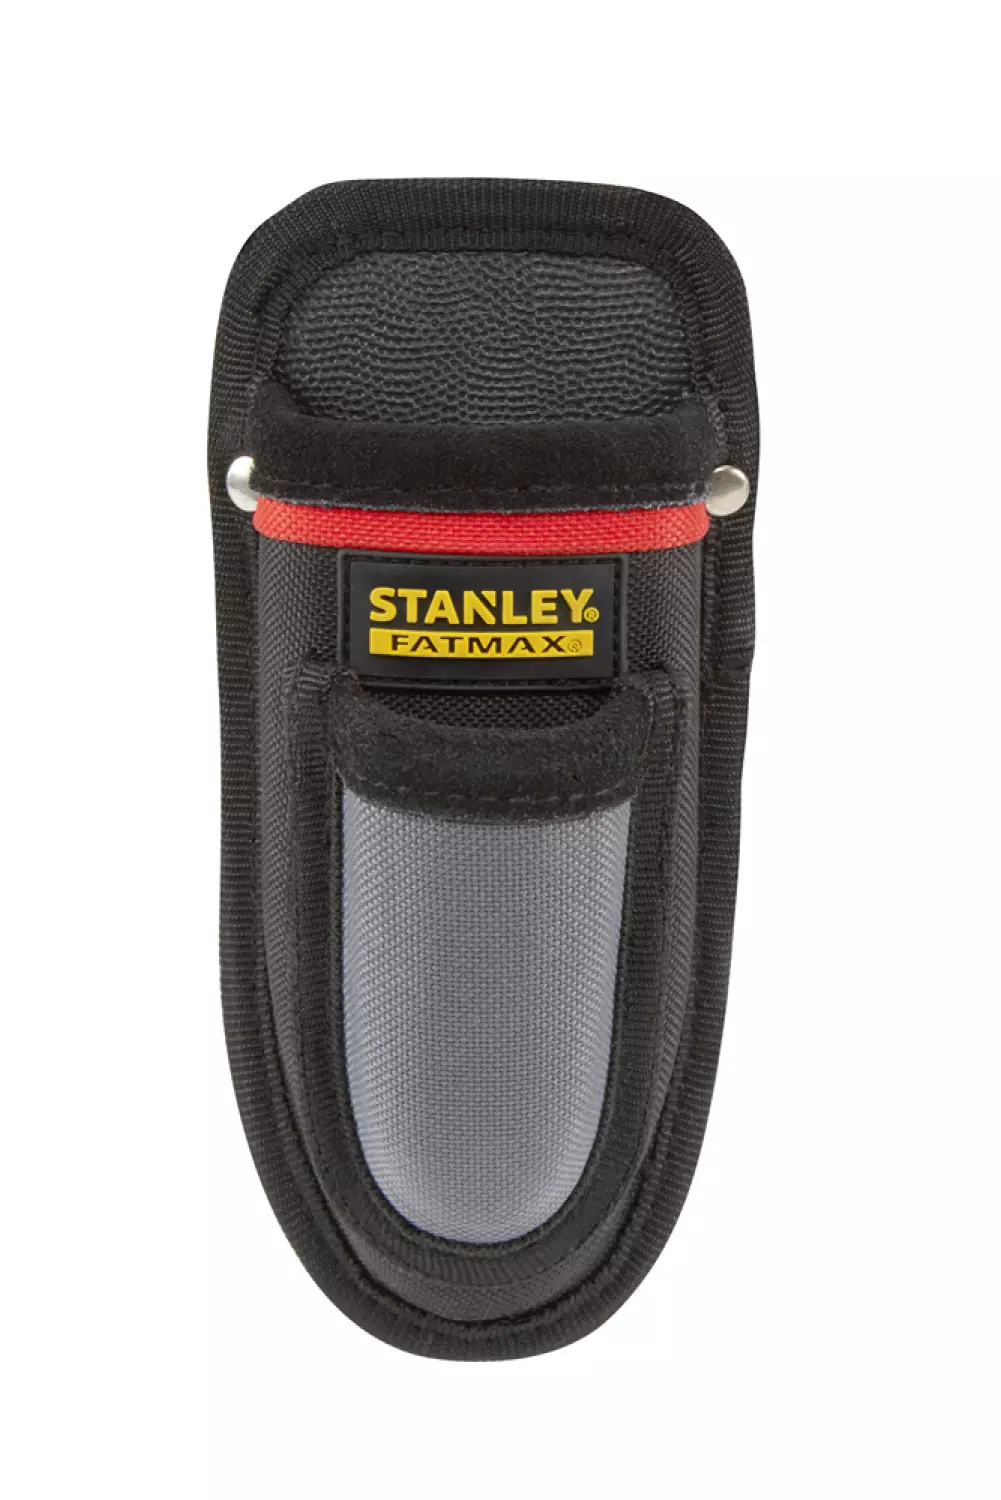 Stanley 0-10-028 - FatMax™ Porte-Couteau-image